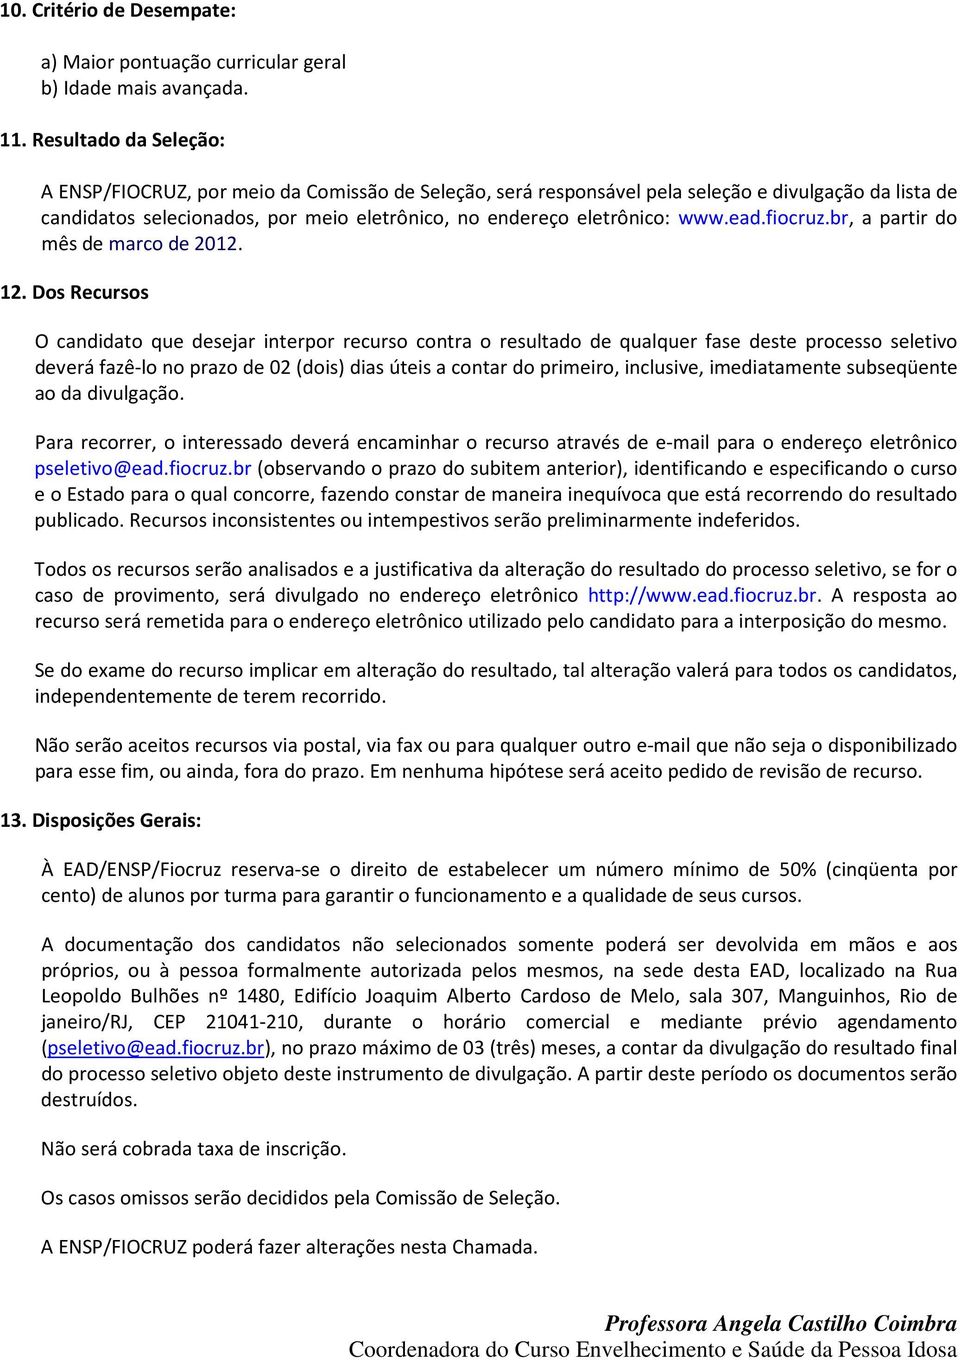 ead.fiocruz.br, a partir do mês de marco de 2012. 12.